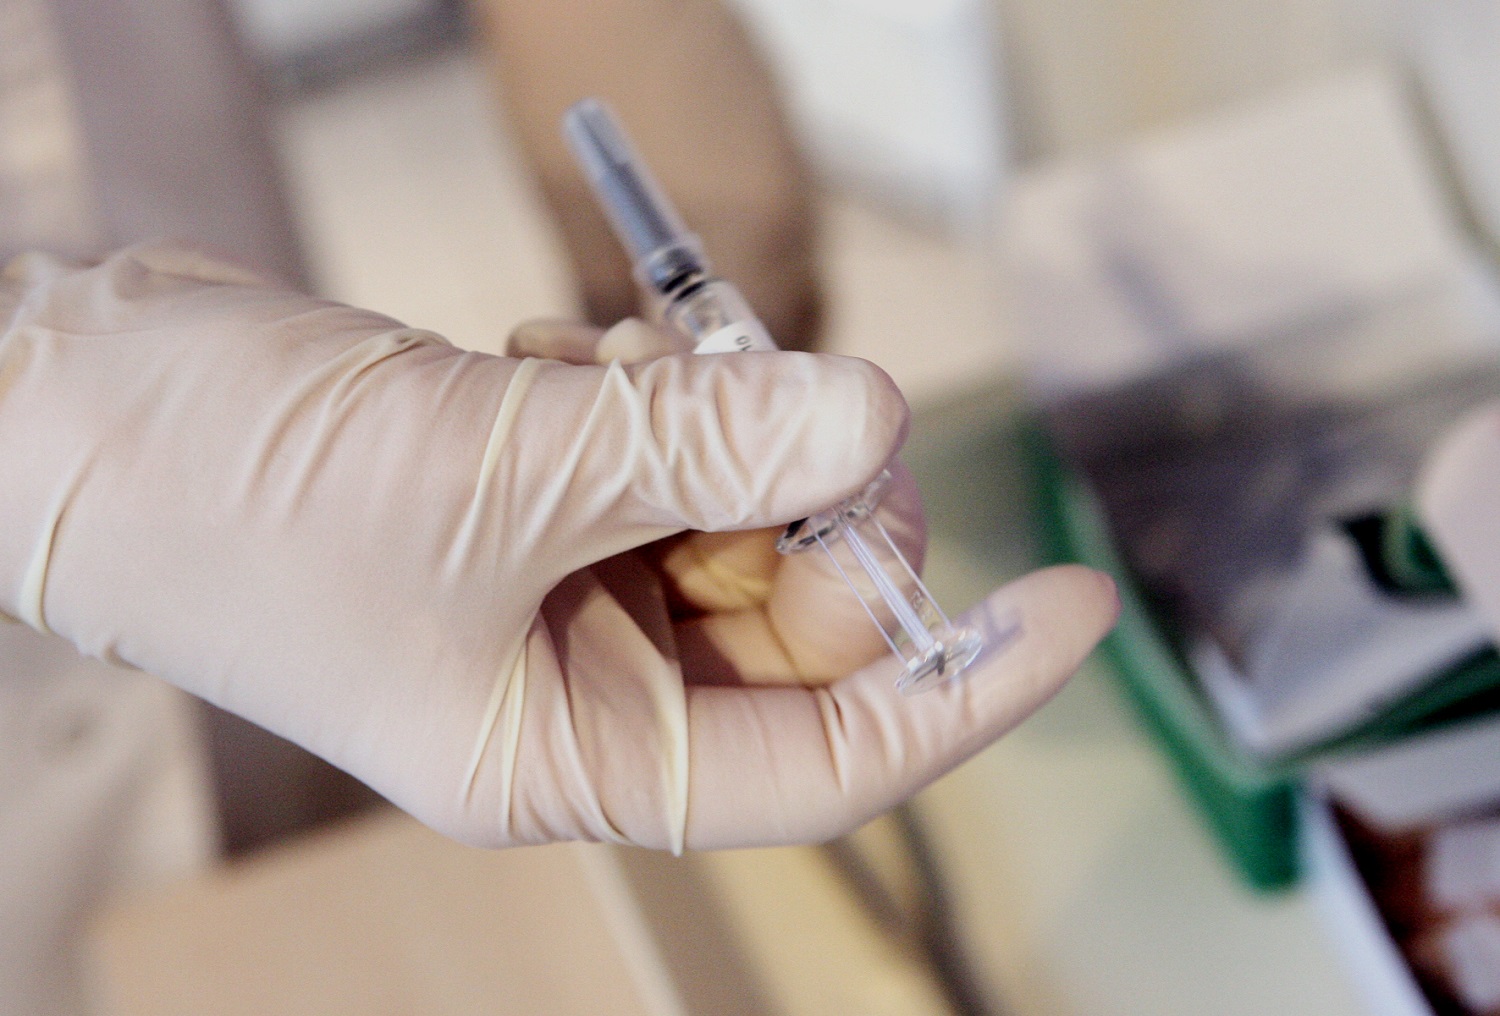 Valstybinė ligonių kasa: pirmoji gripo vakcinų dalis jau pasiekė Lietuvą